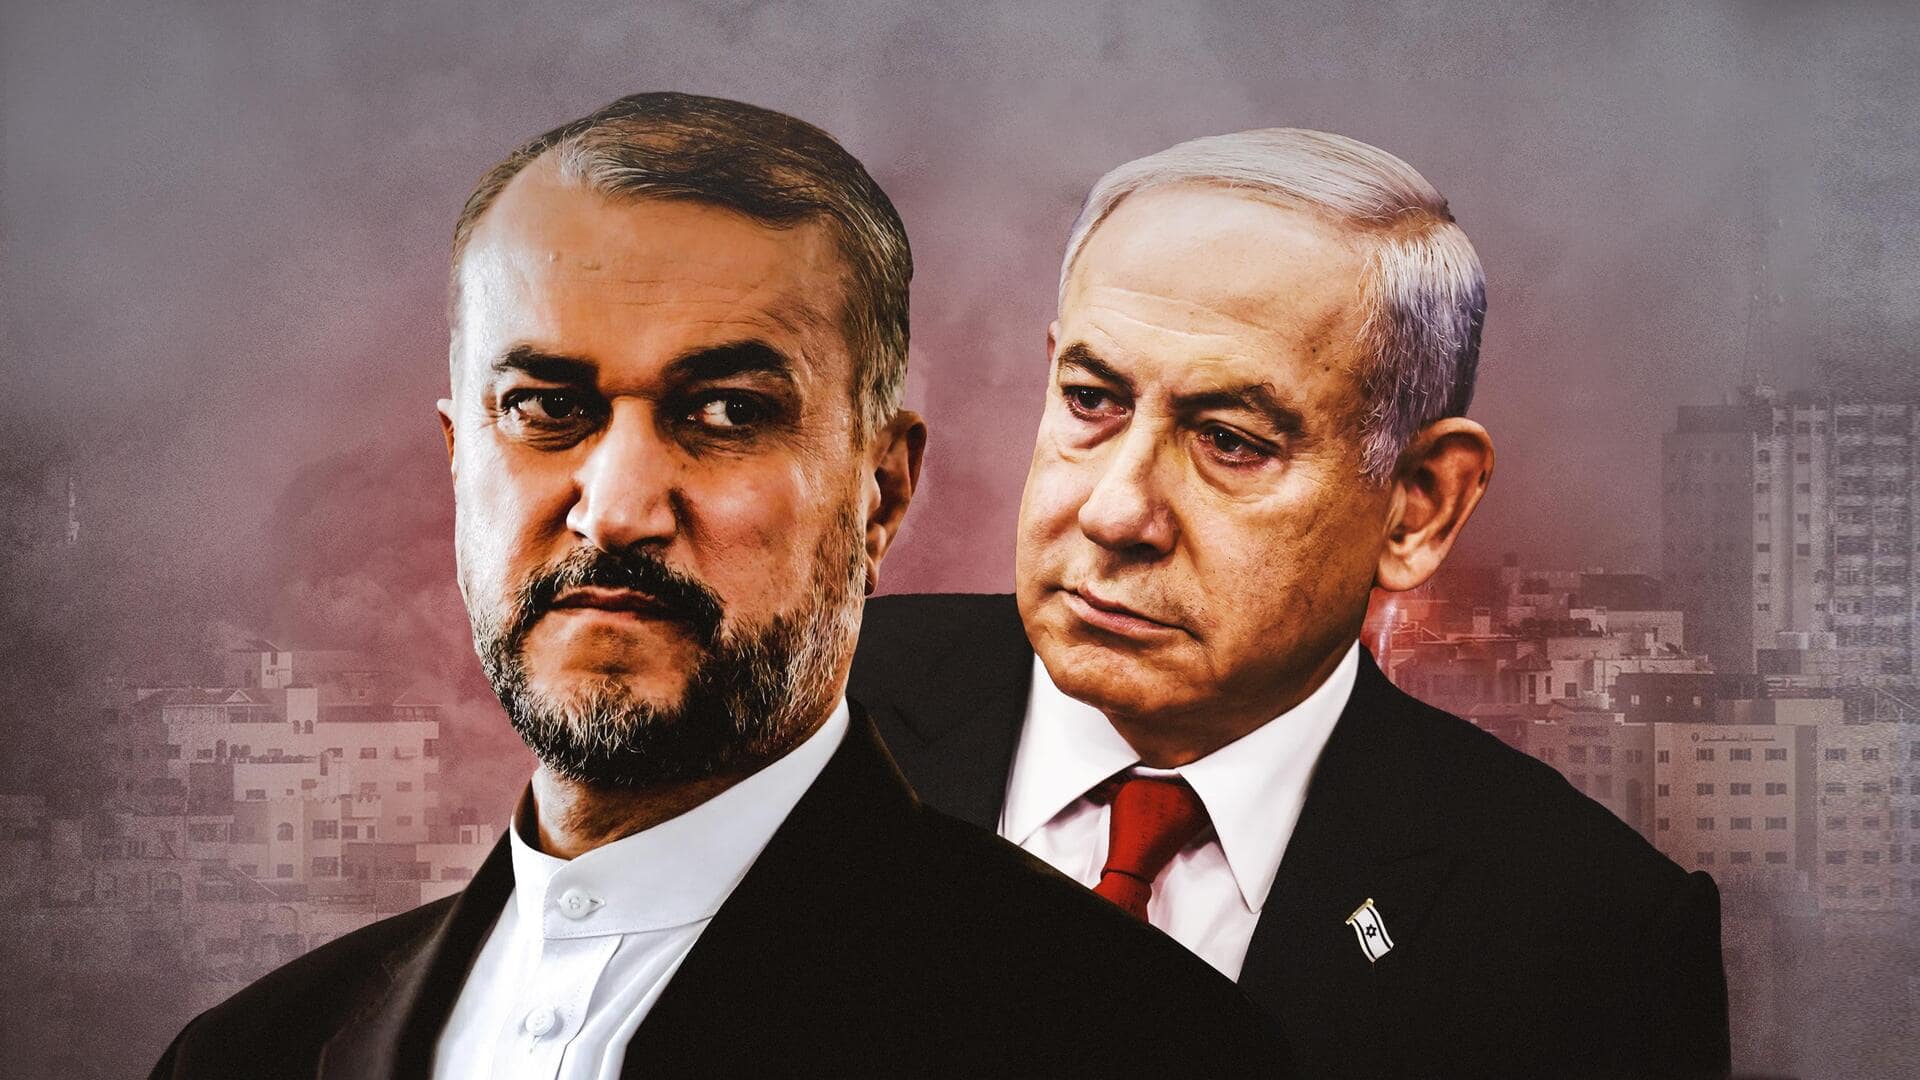 'Hands on trigger': Iran warns of escalation amid Israel-Hamas war